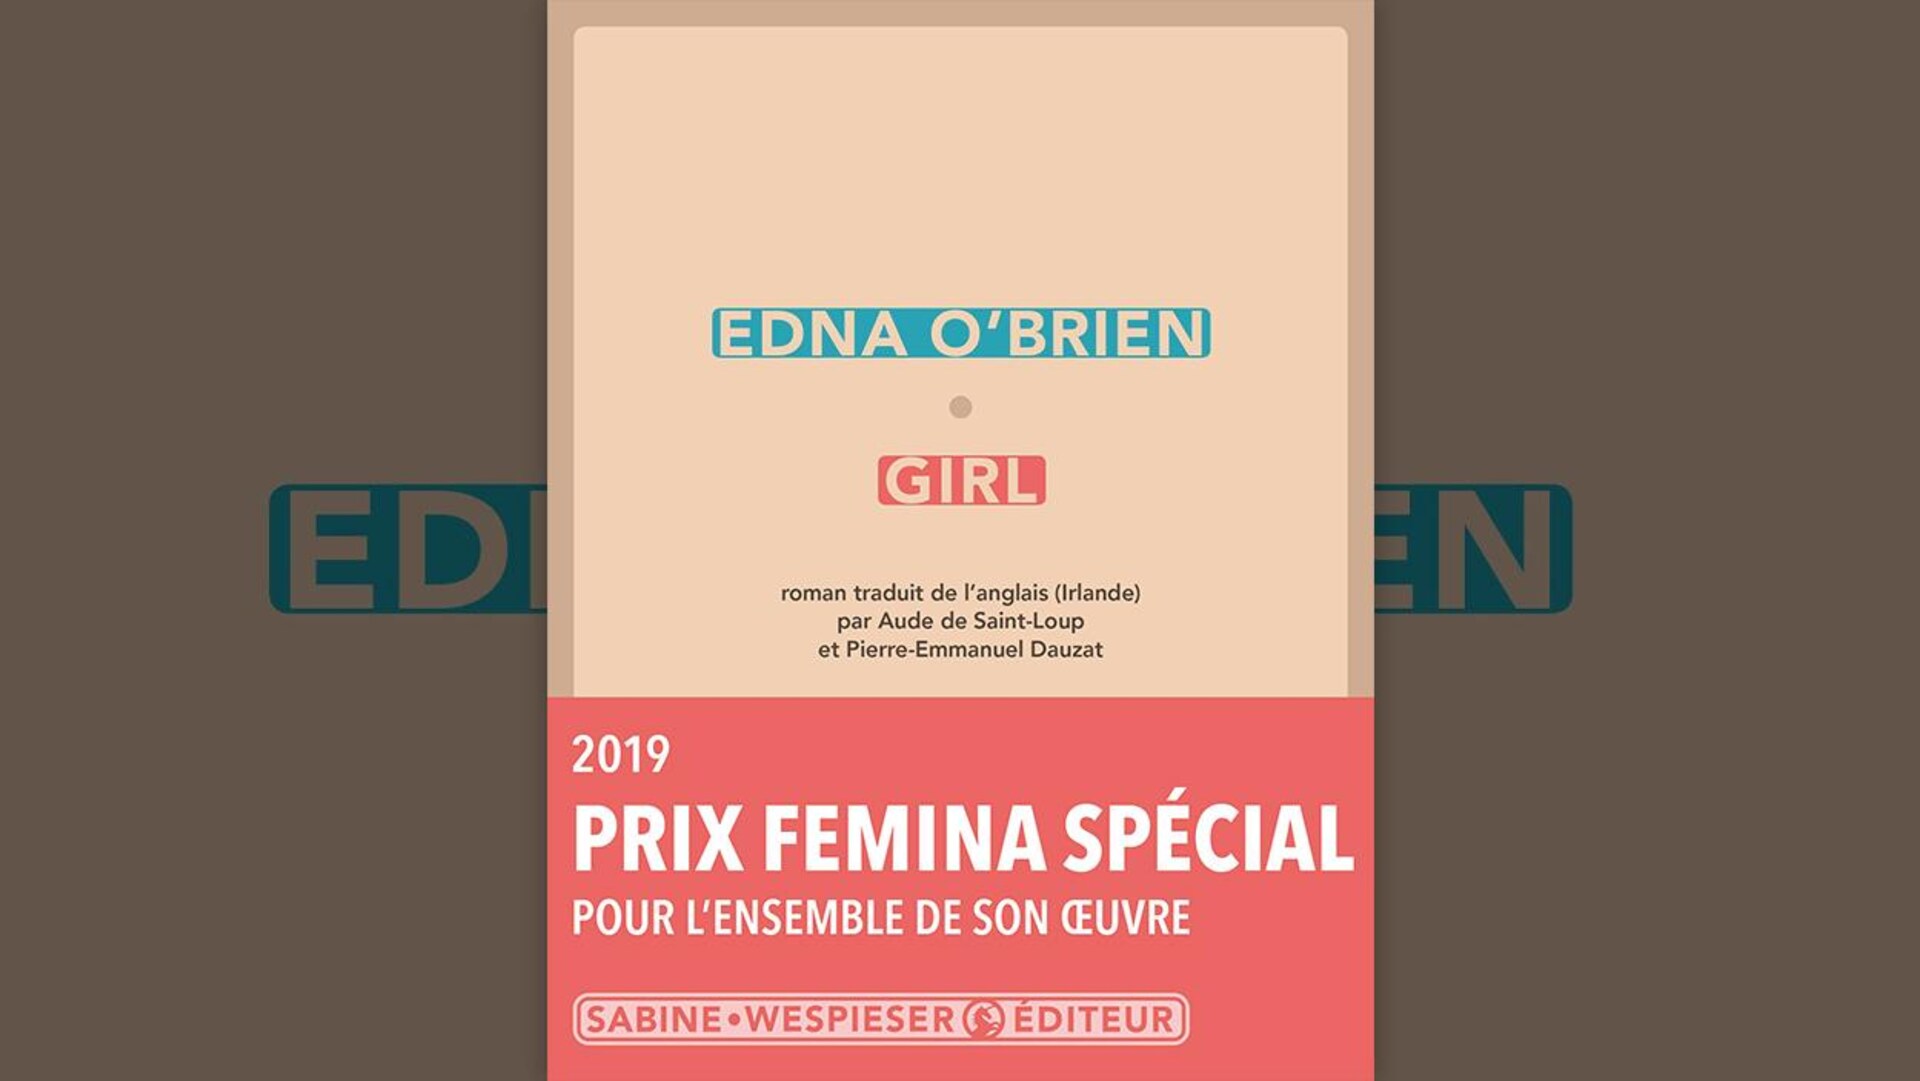 Sur la couverture, en plus du titre et du nom de l'autrice, il y a un bandeau indiquant qu'elle a reçu un prix Femina spécial pour l'ensemble de son œuvre en 2019.